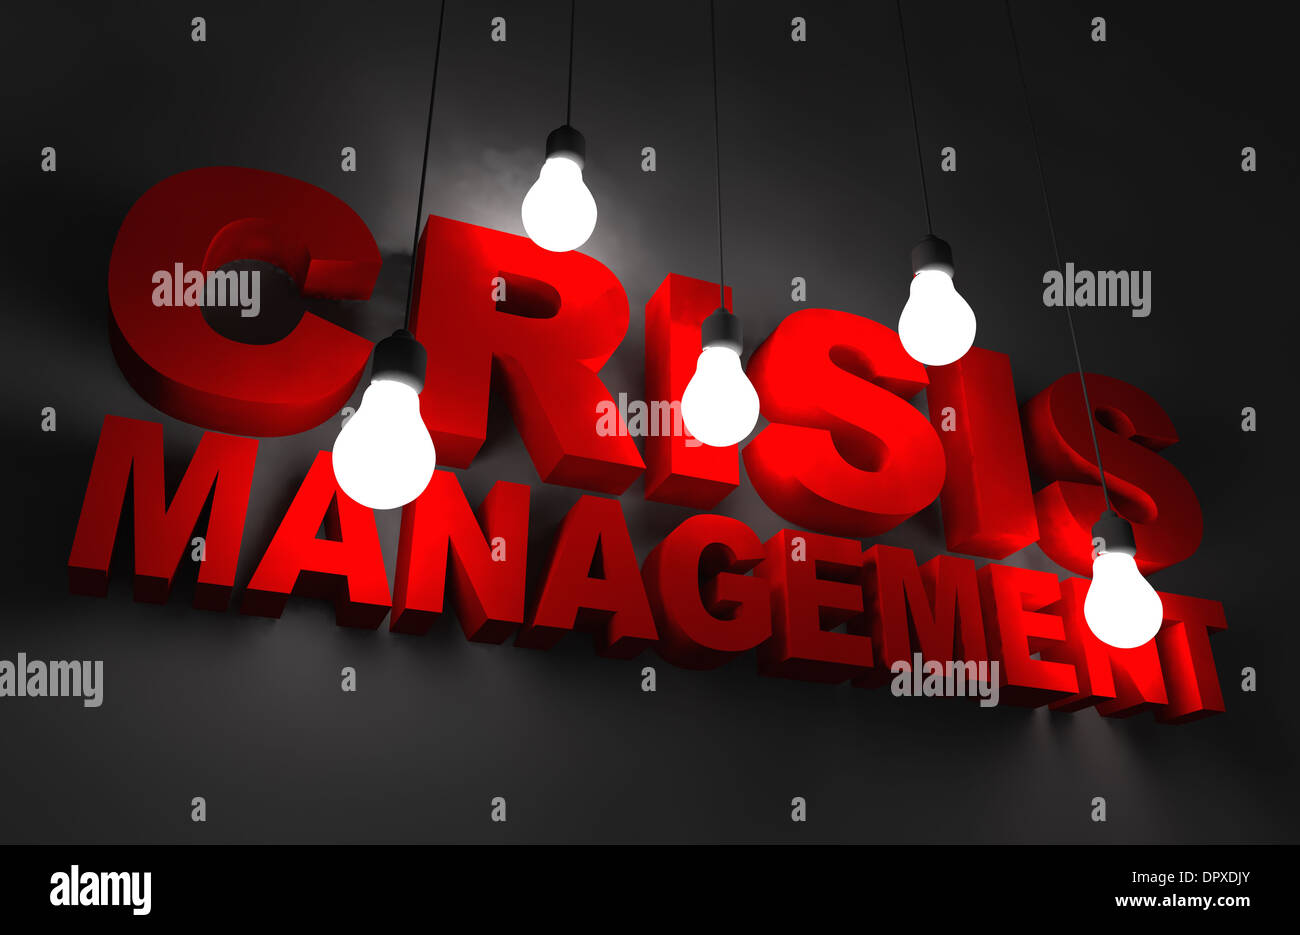 Ilustración del concepto de gestión de crisis. Letras rojas iluminadas por lámparas colgantes. Foto de stock